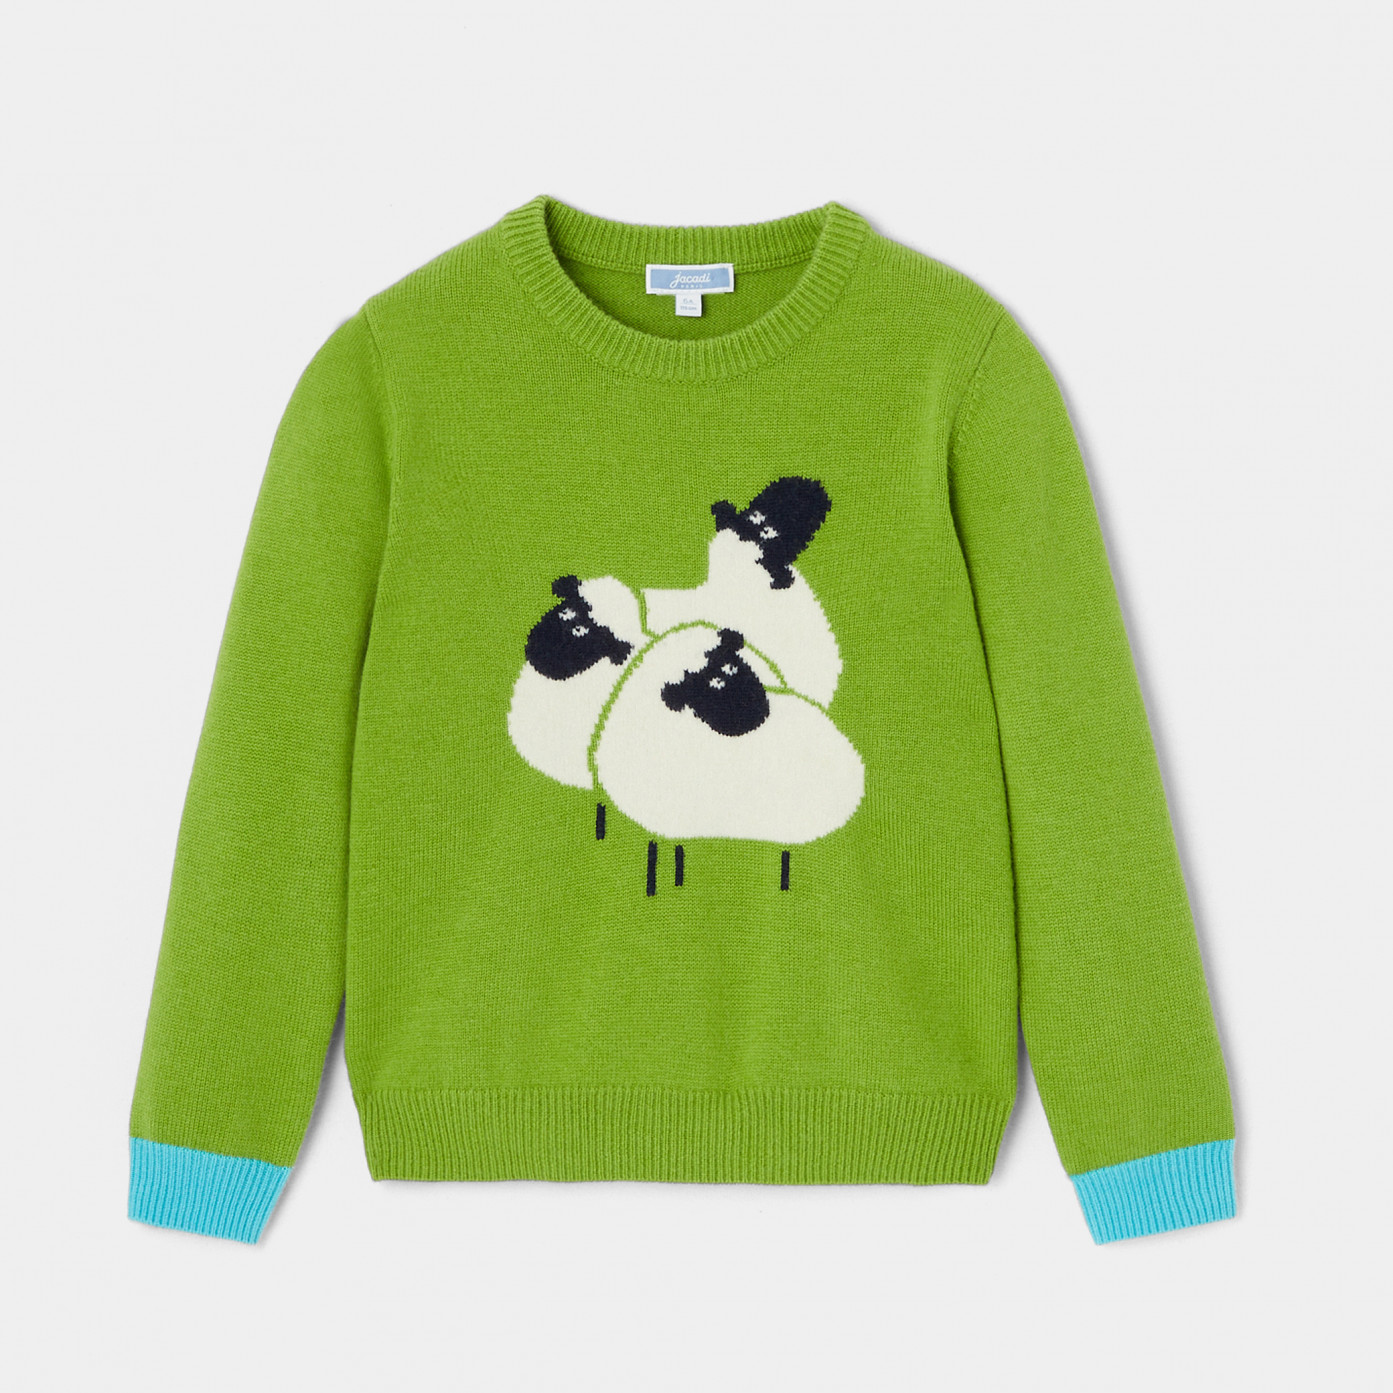 Chlapecký svetr s intarzií oveček